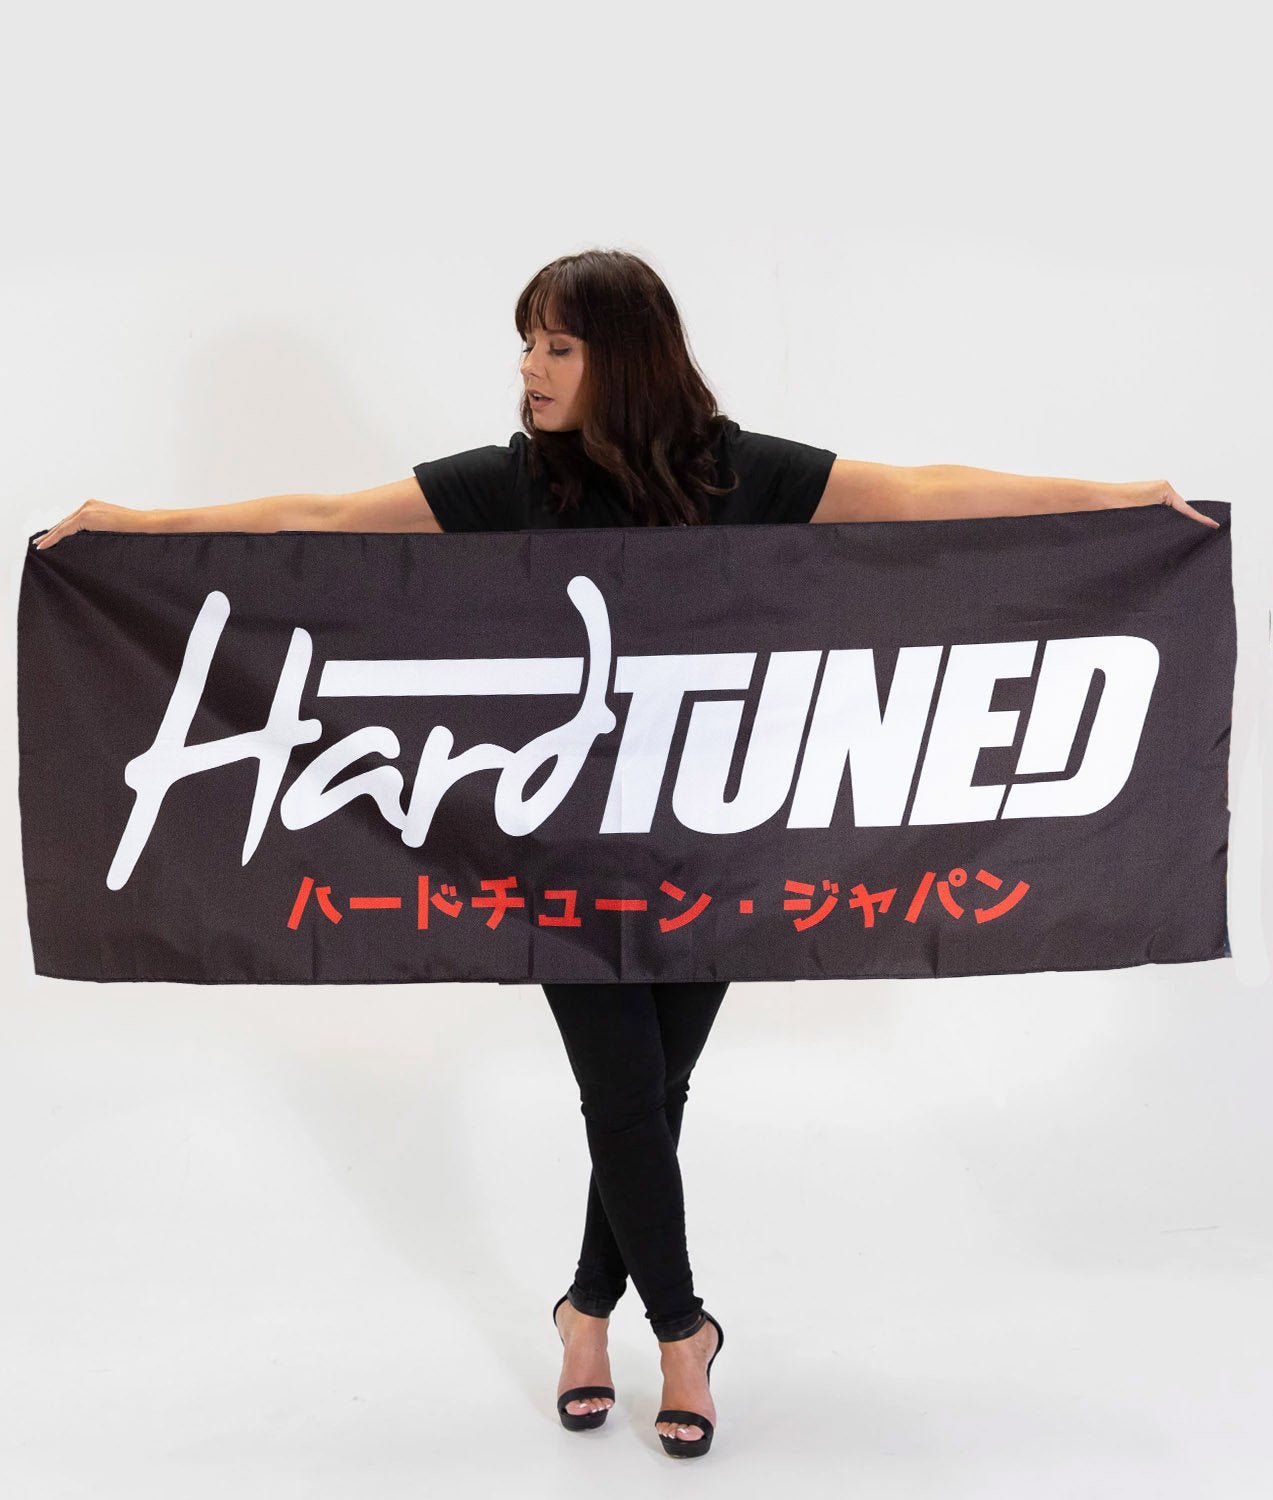 JDM HardTuned Black Workshop Flag Banner - Hardtuned